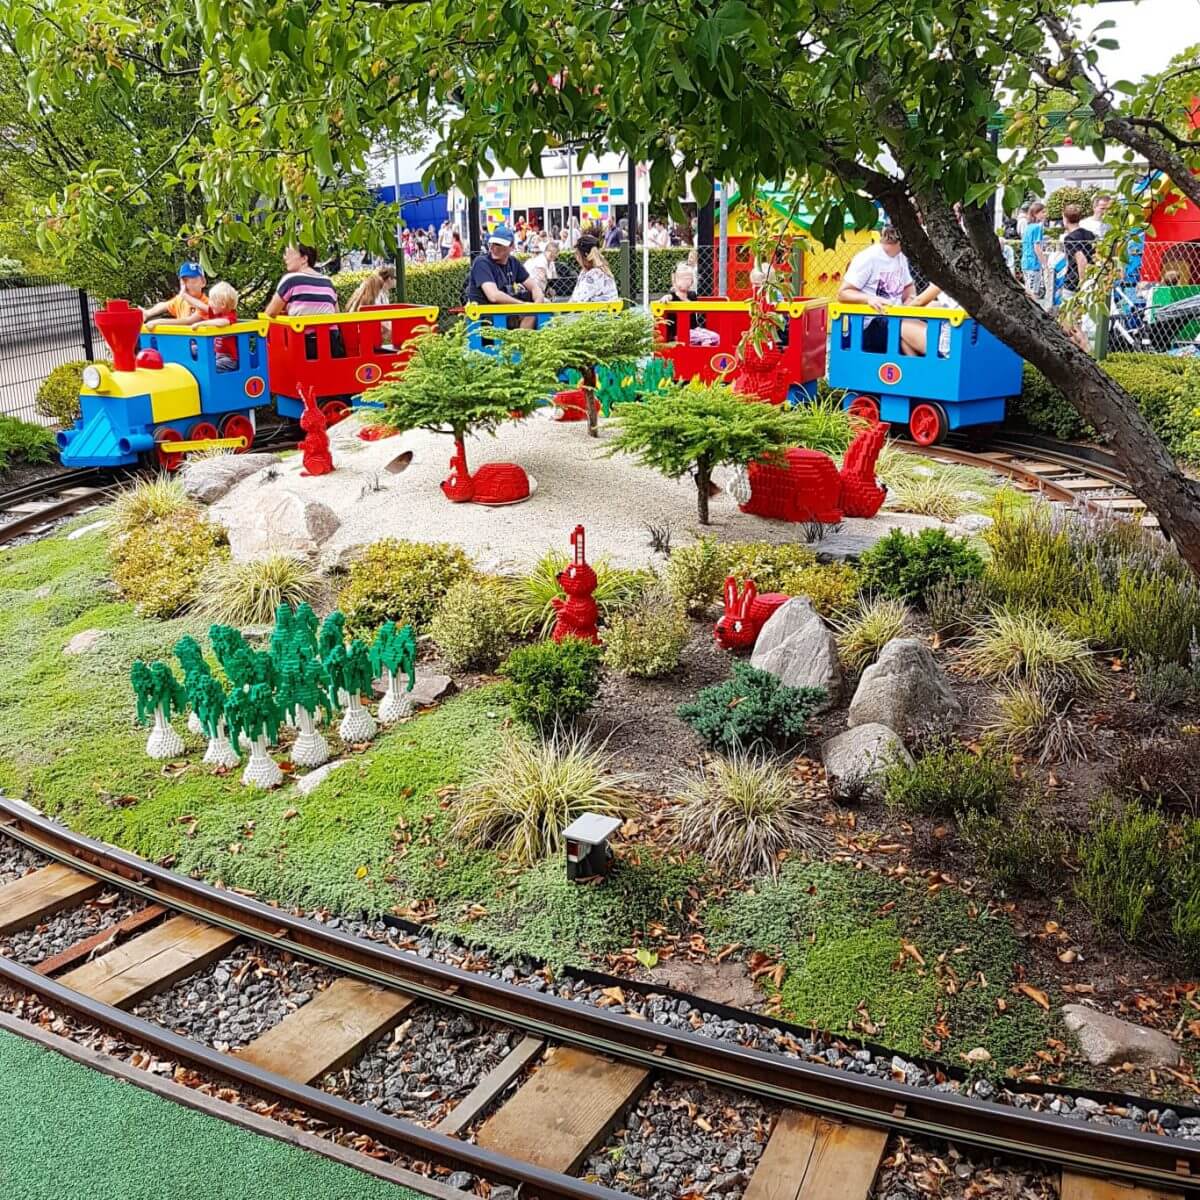 Legoland met kinderen: alles wat je wil weten, DUPLO Land DUPLO Express trein #leukmetkids #legoland #Denemarken #kinderen